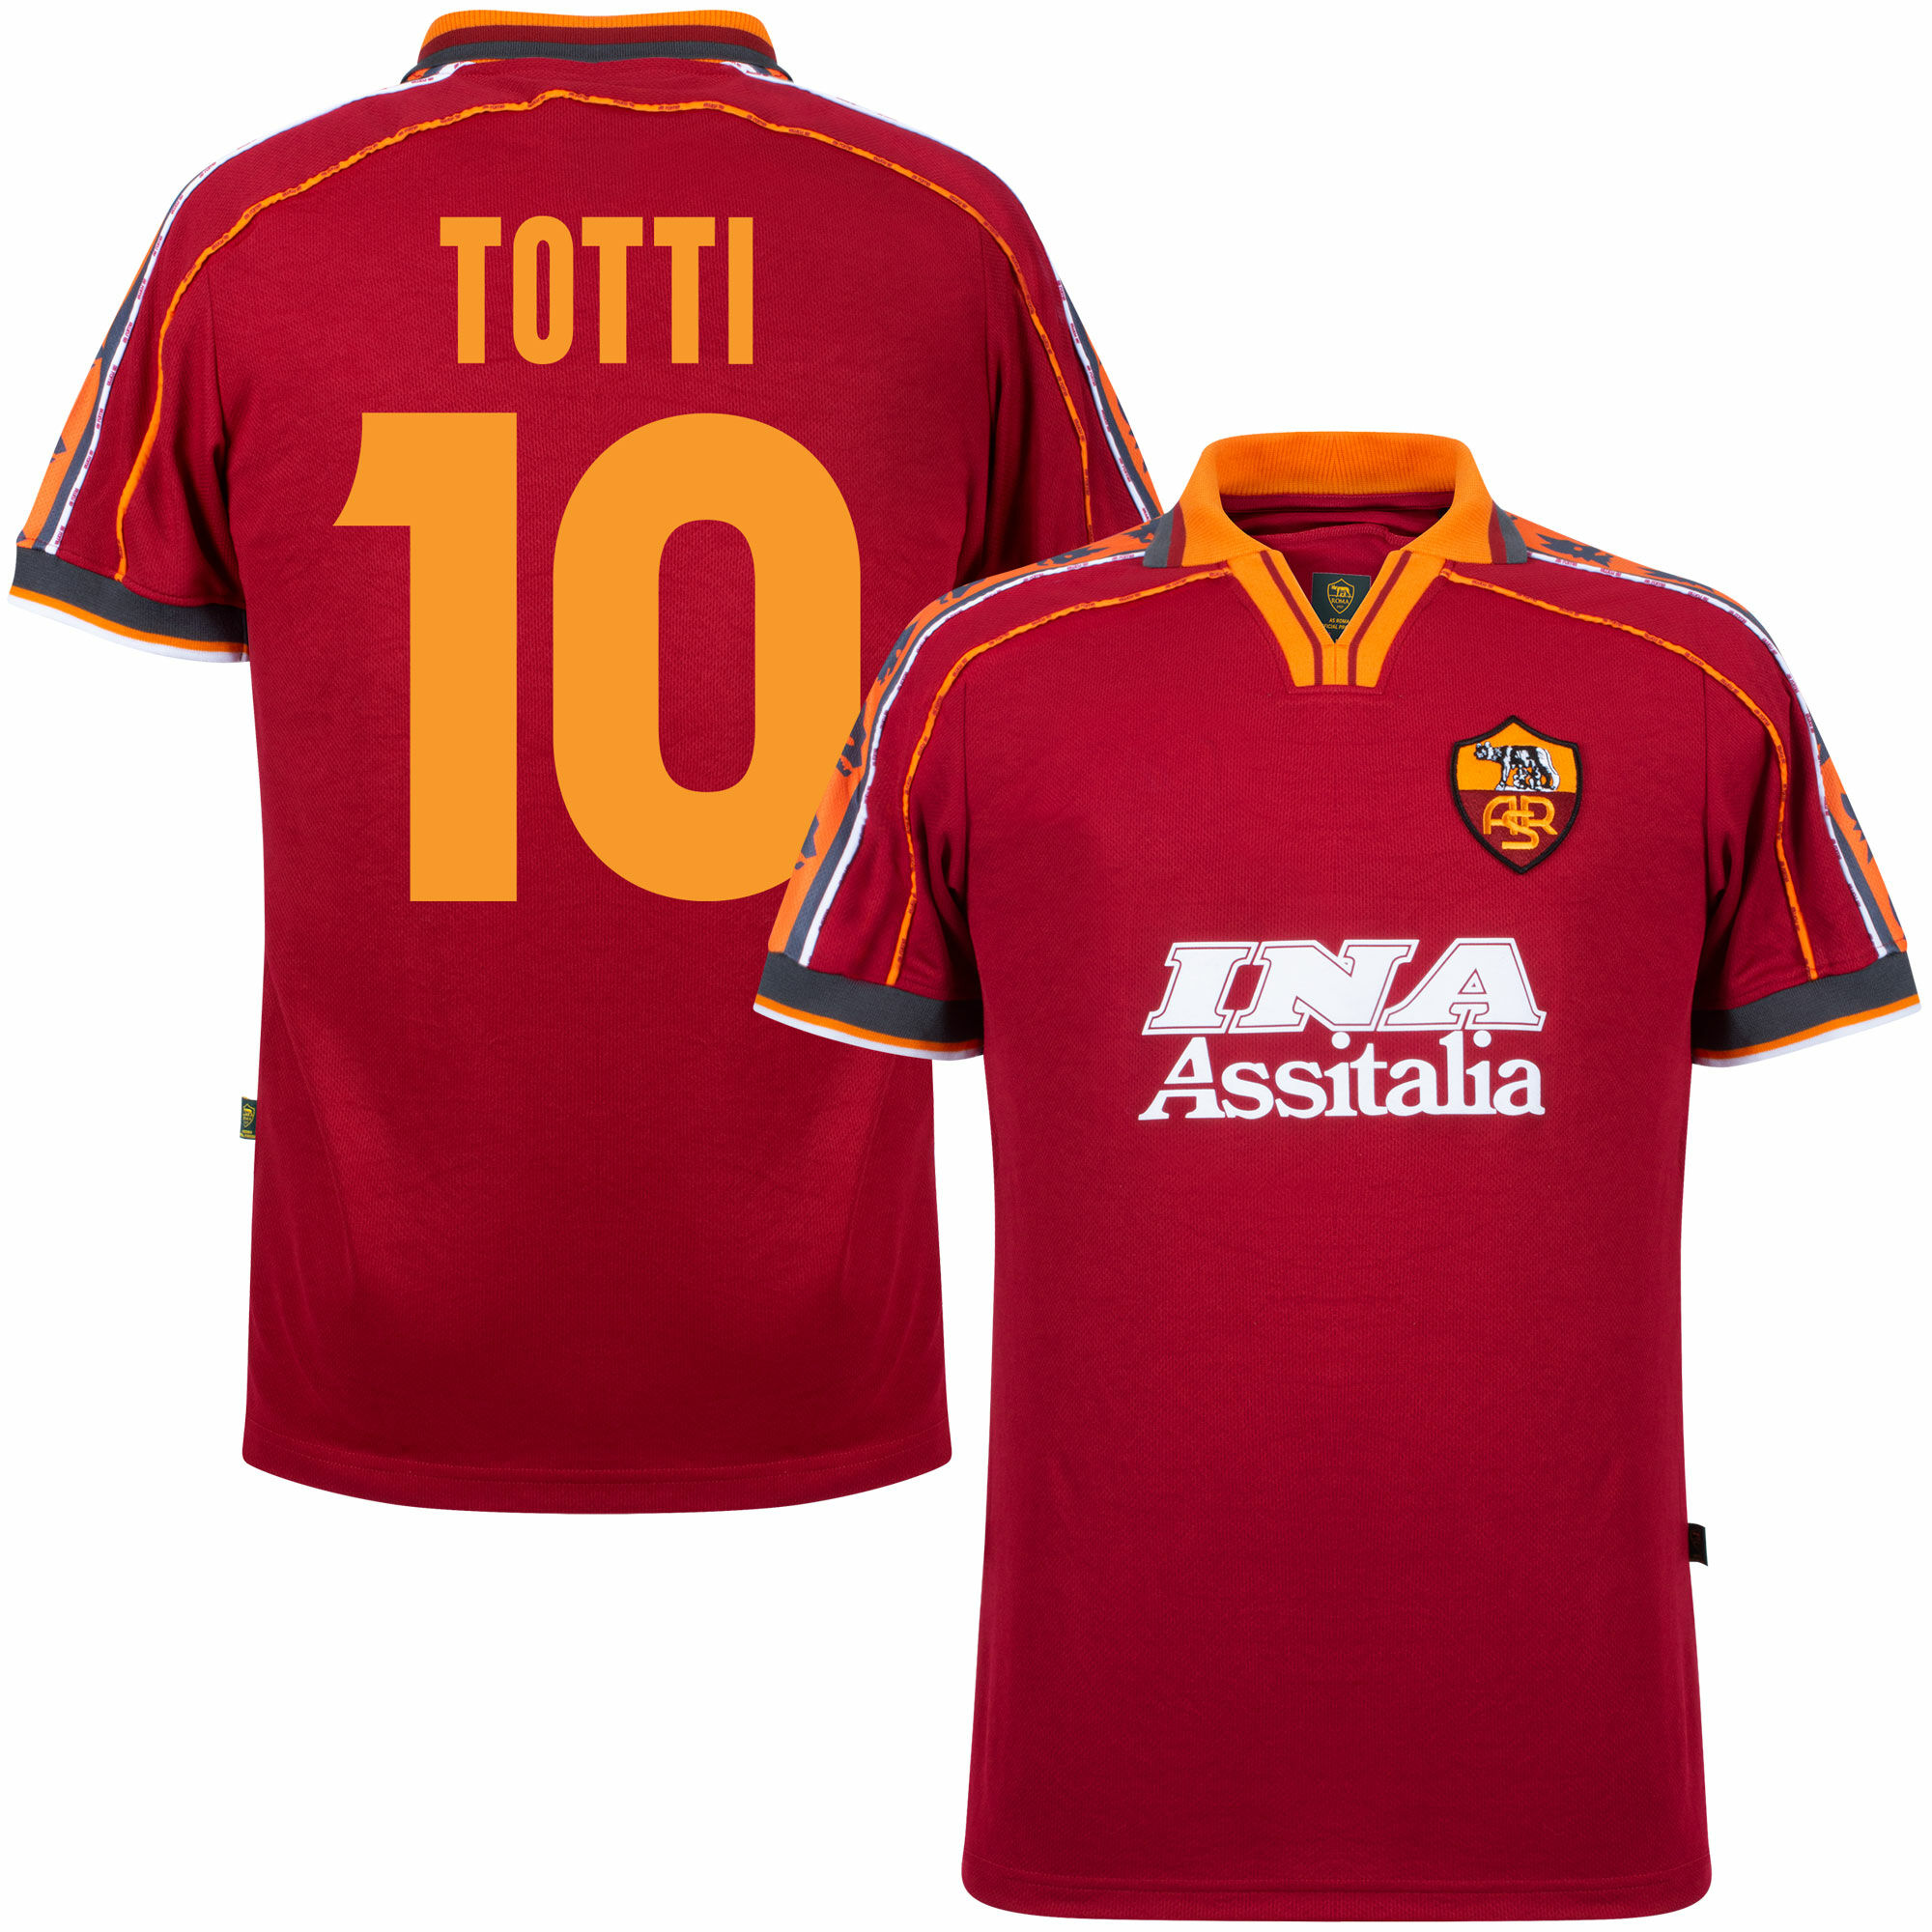 AS Řím - Dres fotbalový - sezóna 1998/99, vínový, číslo 10, domácí, Francesco Totti, retrostyl